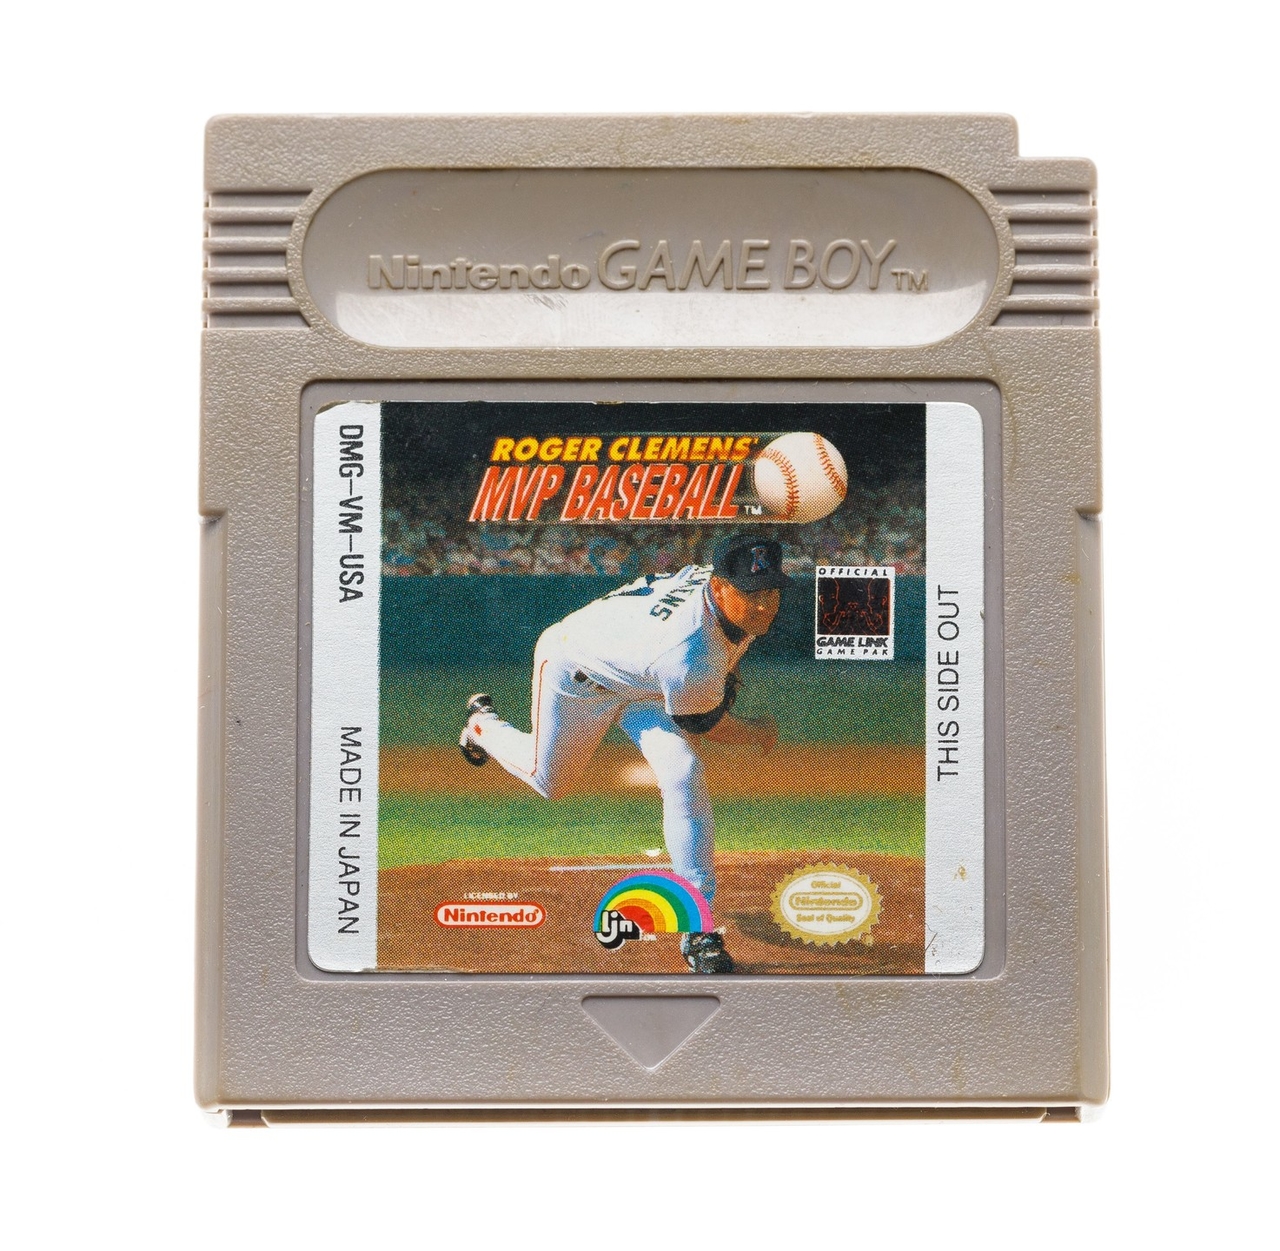 Roger Clemens MVP Baseball - Gameboy Classic Games